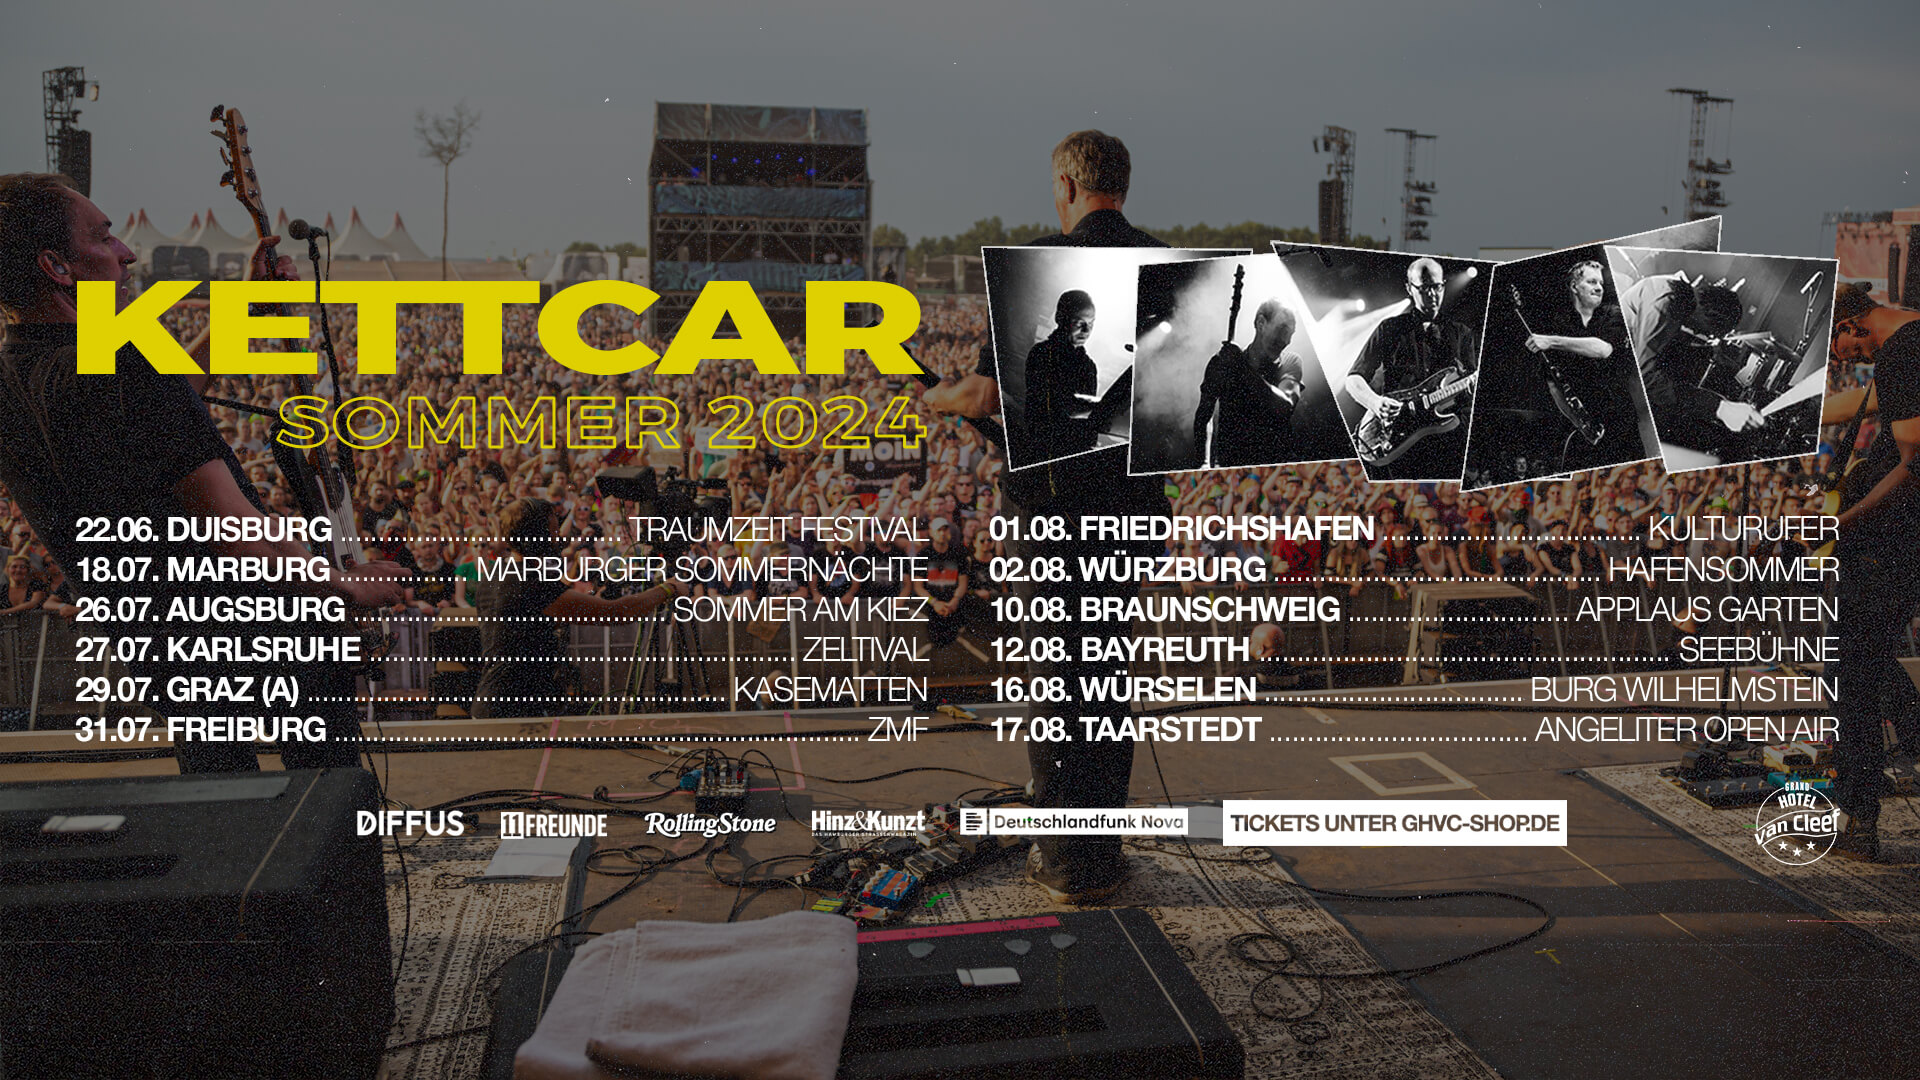 KETTCAR verlängern ihre Tour und kündigen Open AirKonzerte im Sommer